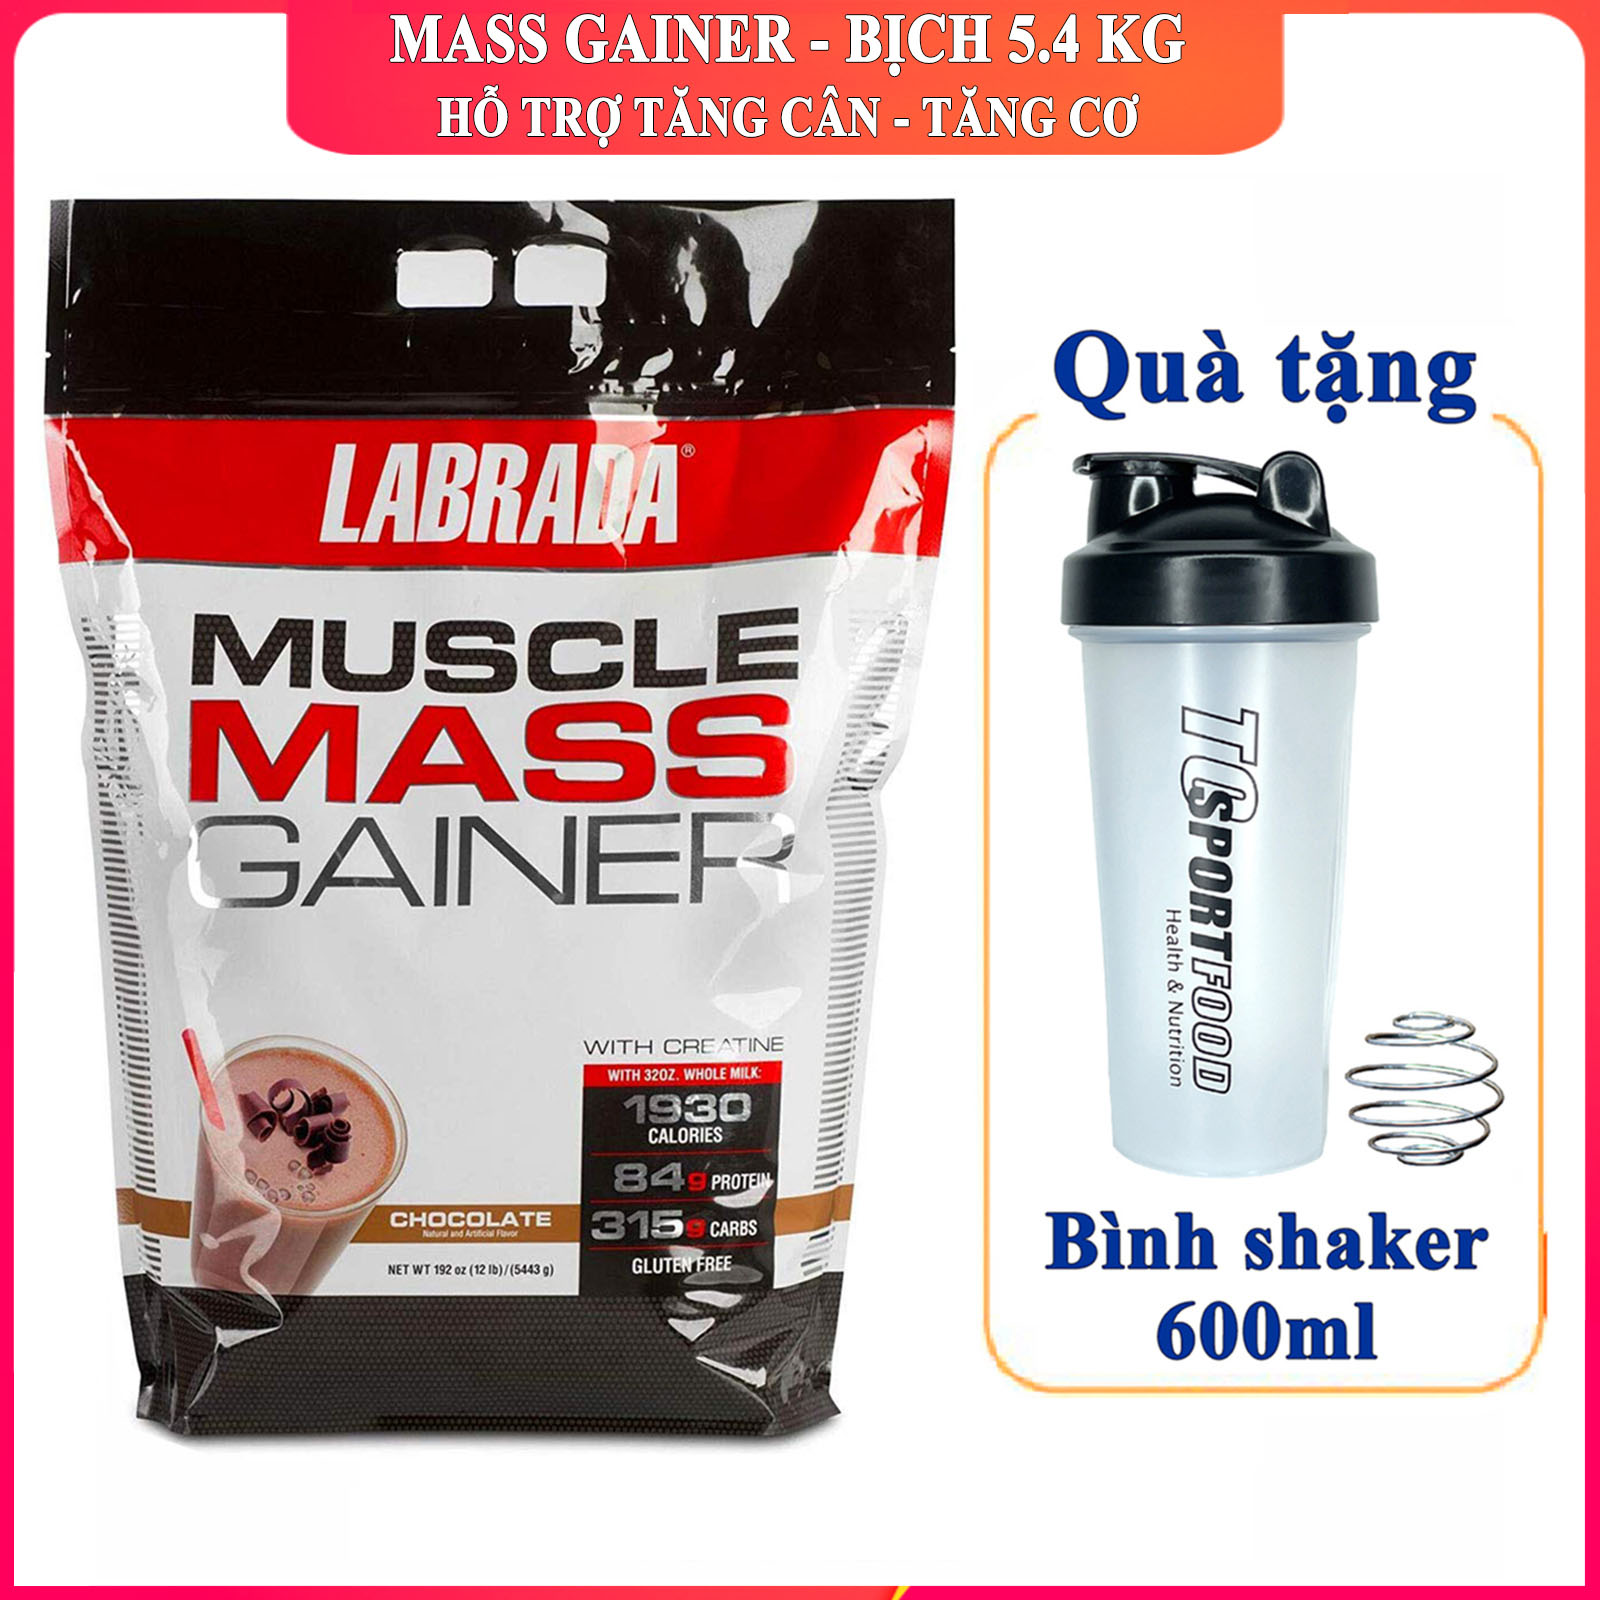 FREE SHAKER Sữa tăng cân tăng cơ Muscle Mass Gainer của Labrada hương